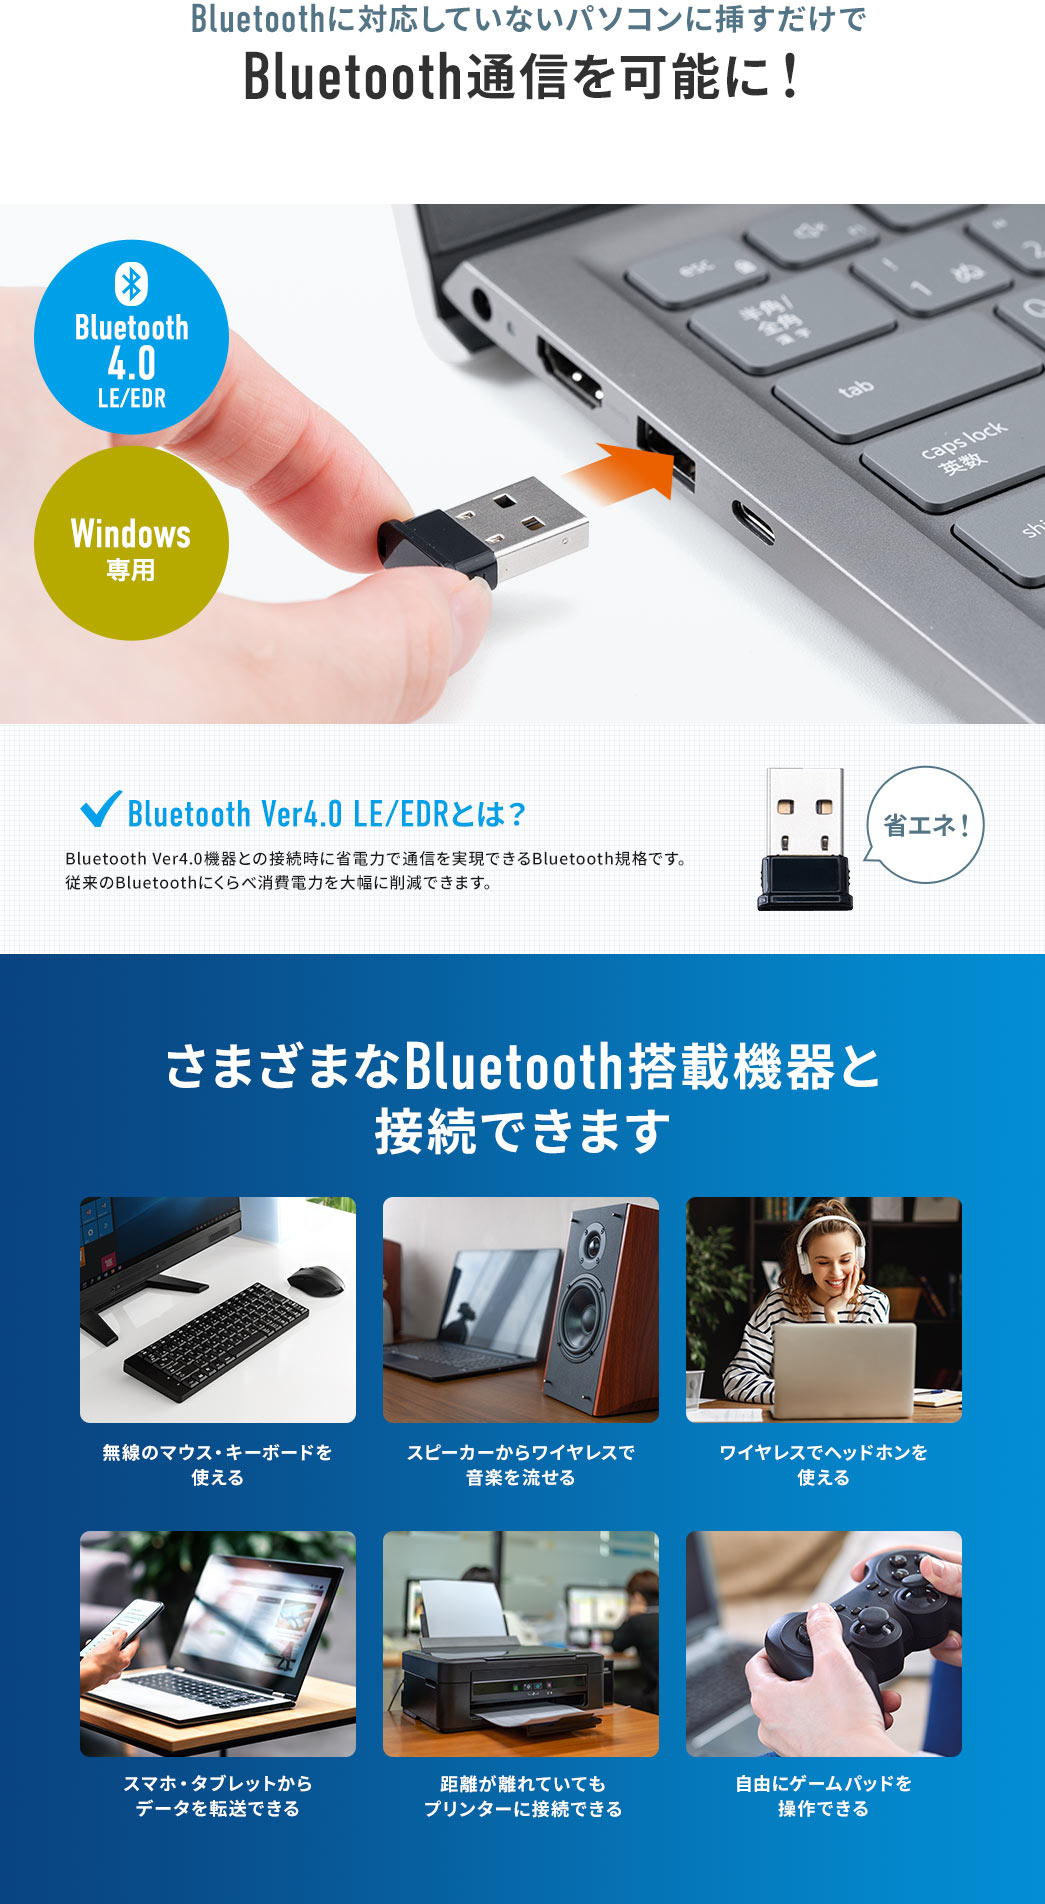 Bluetoothに対応していないパソコンに挿すだけでBluetooth通信を可能に！ さまざまなBluetooth搭載機器と接続できます